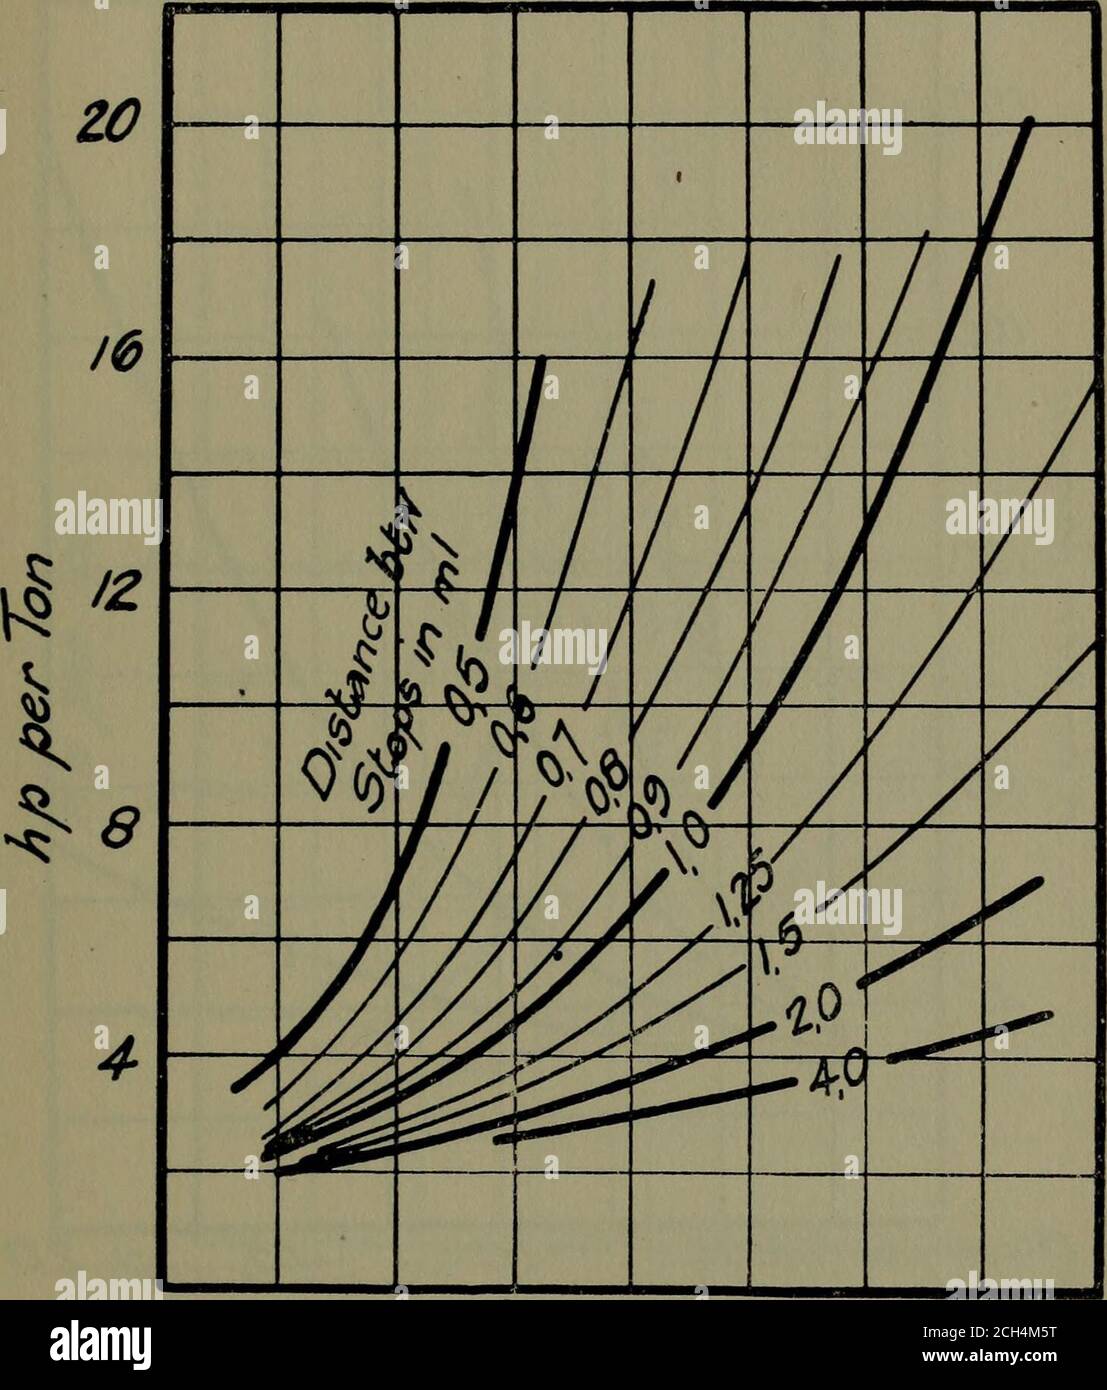 . Trains électriques . Vitesse planifiée/n/n/fih PIQ. 45.—courbes donnant des estimations conservatrices de la consommation d'énergie au train pour diverses annexes, dans des conditions de travail normales (à partir des calcu-larations du tableau XXVI., basées sur les courbes de la Fig. 44). EFFICACITÉ DE L'ÉQUIPEMENT ÉLECTRIQUE 8I. /5 :do e^ 30 3chedu/e vitesse/n m/JO/t Fig. 46.—courbes donnant des estimations conservatrices de la capacité de l'équipement HP inévalué des moteurs par tonne poids du train, nécessaire pour opératiag VariousSchedules dans des conditions de travail normales. 82 TRAINS ÉLECTRIQUES Banque D'Images